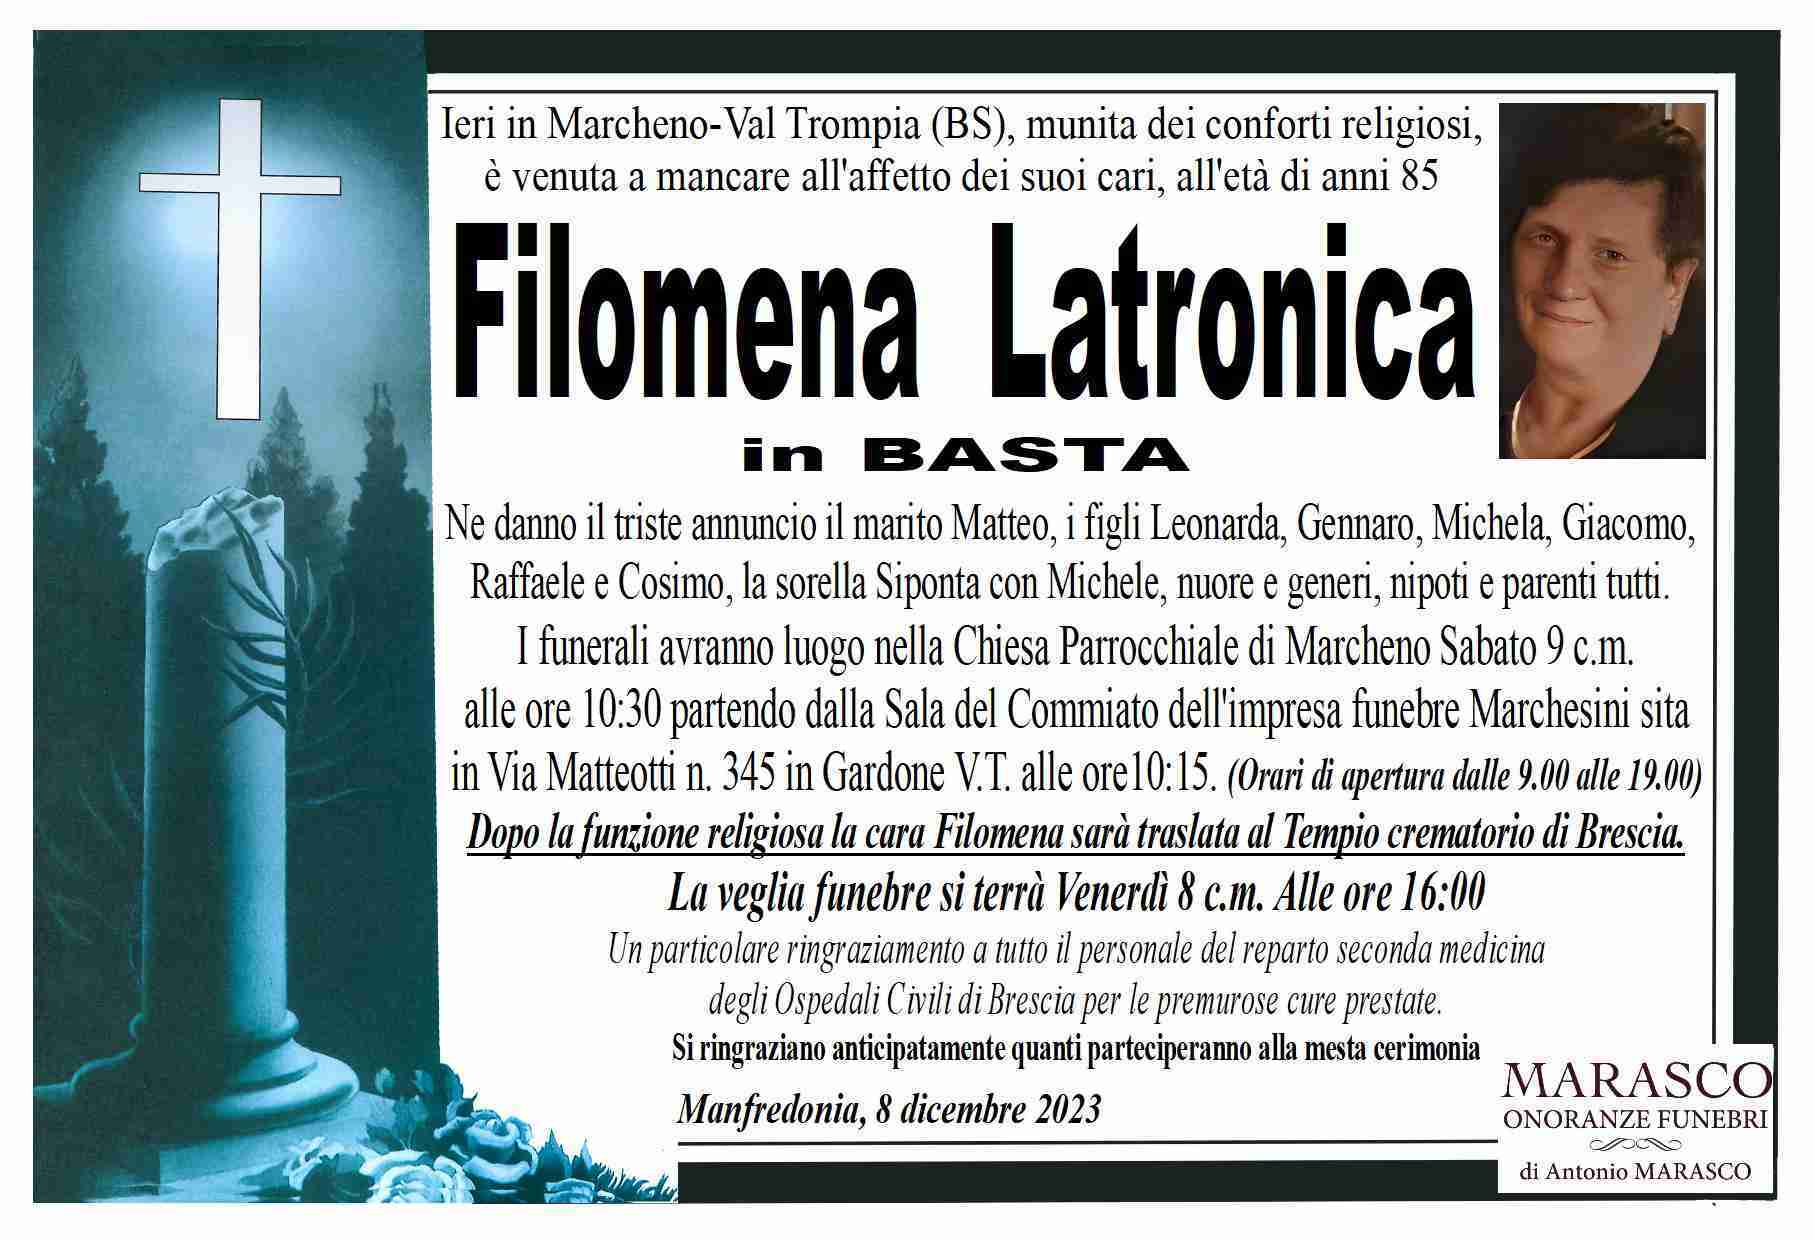 Filomena Latronica